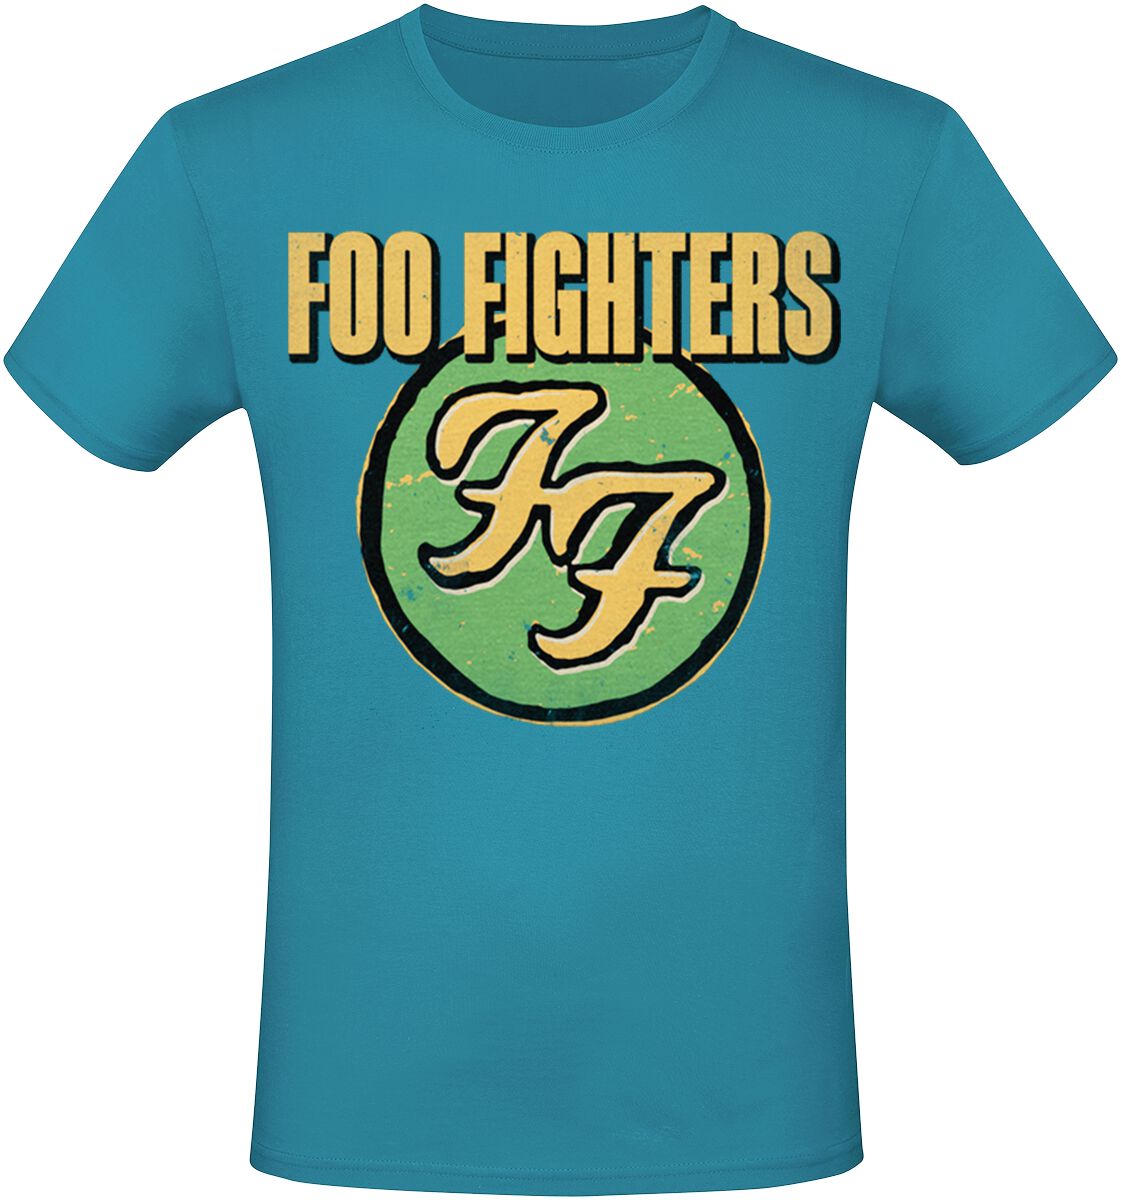 Foo Fighters T-Shirt - Logo - S bis 3XL - für Männer - Größe 3XL - blau  - Lizenziertes Merchandise!